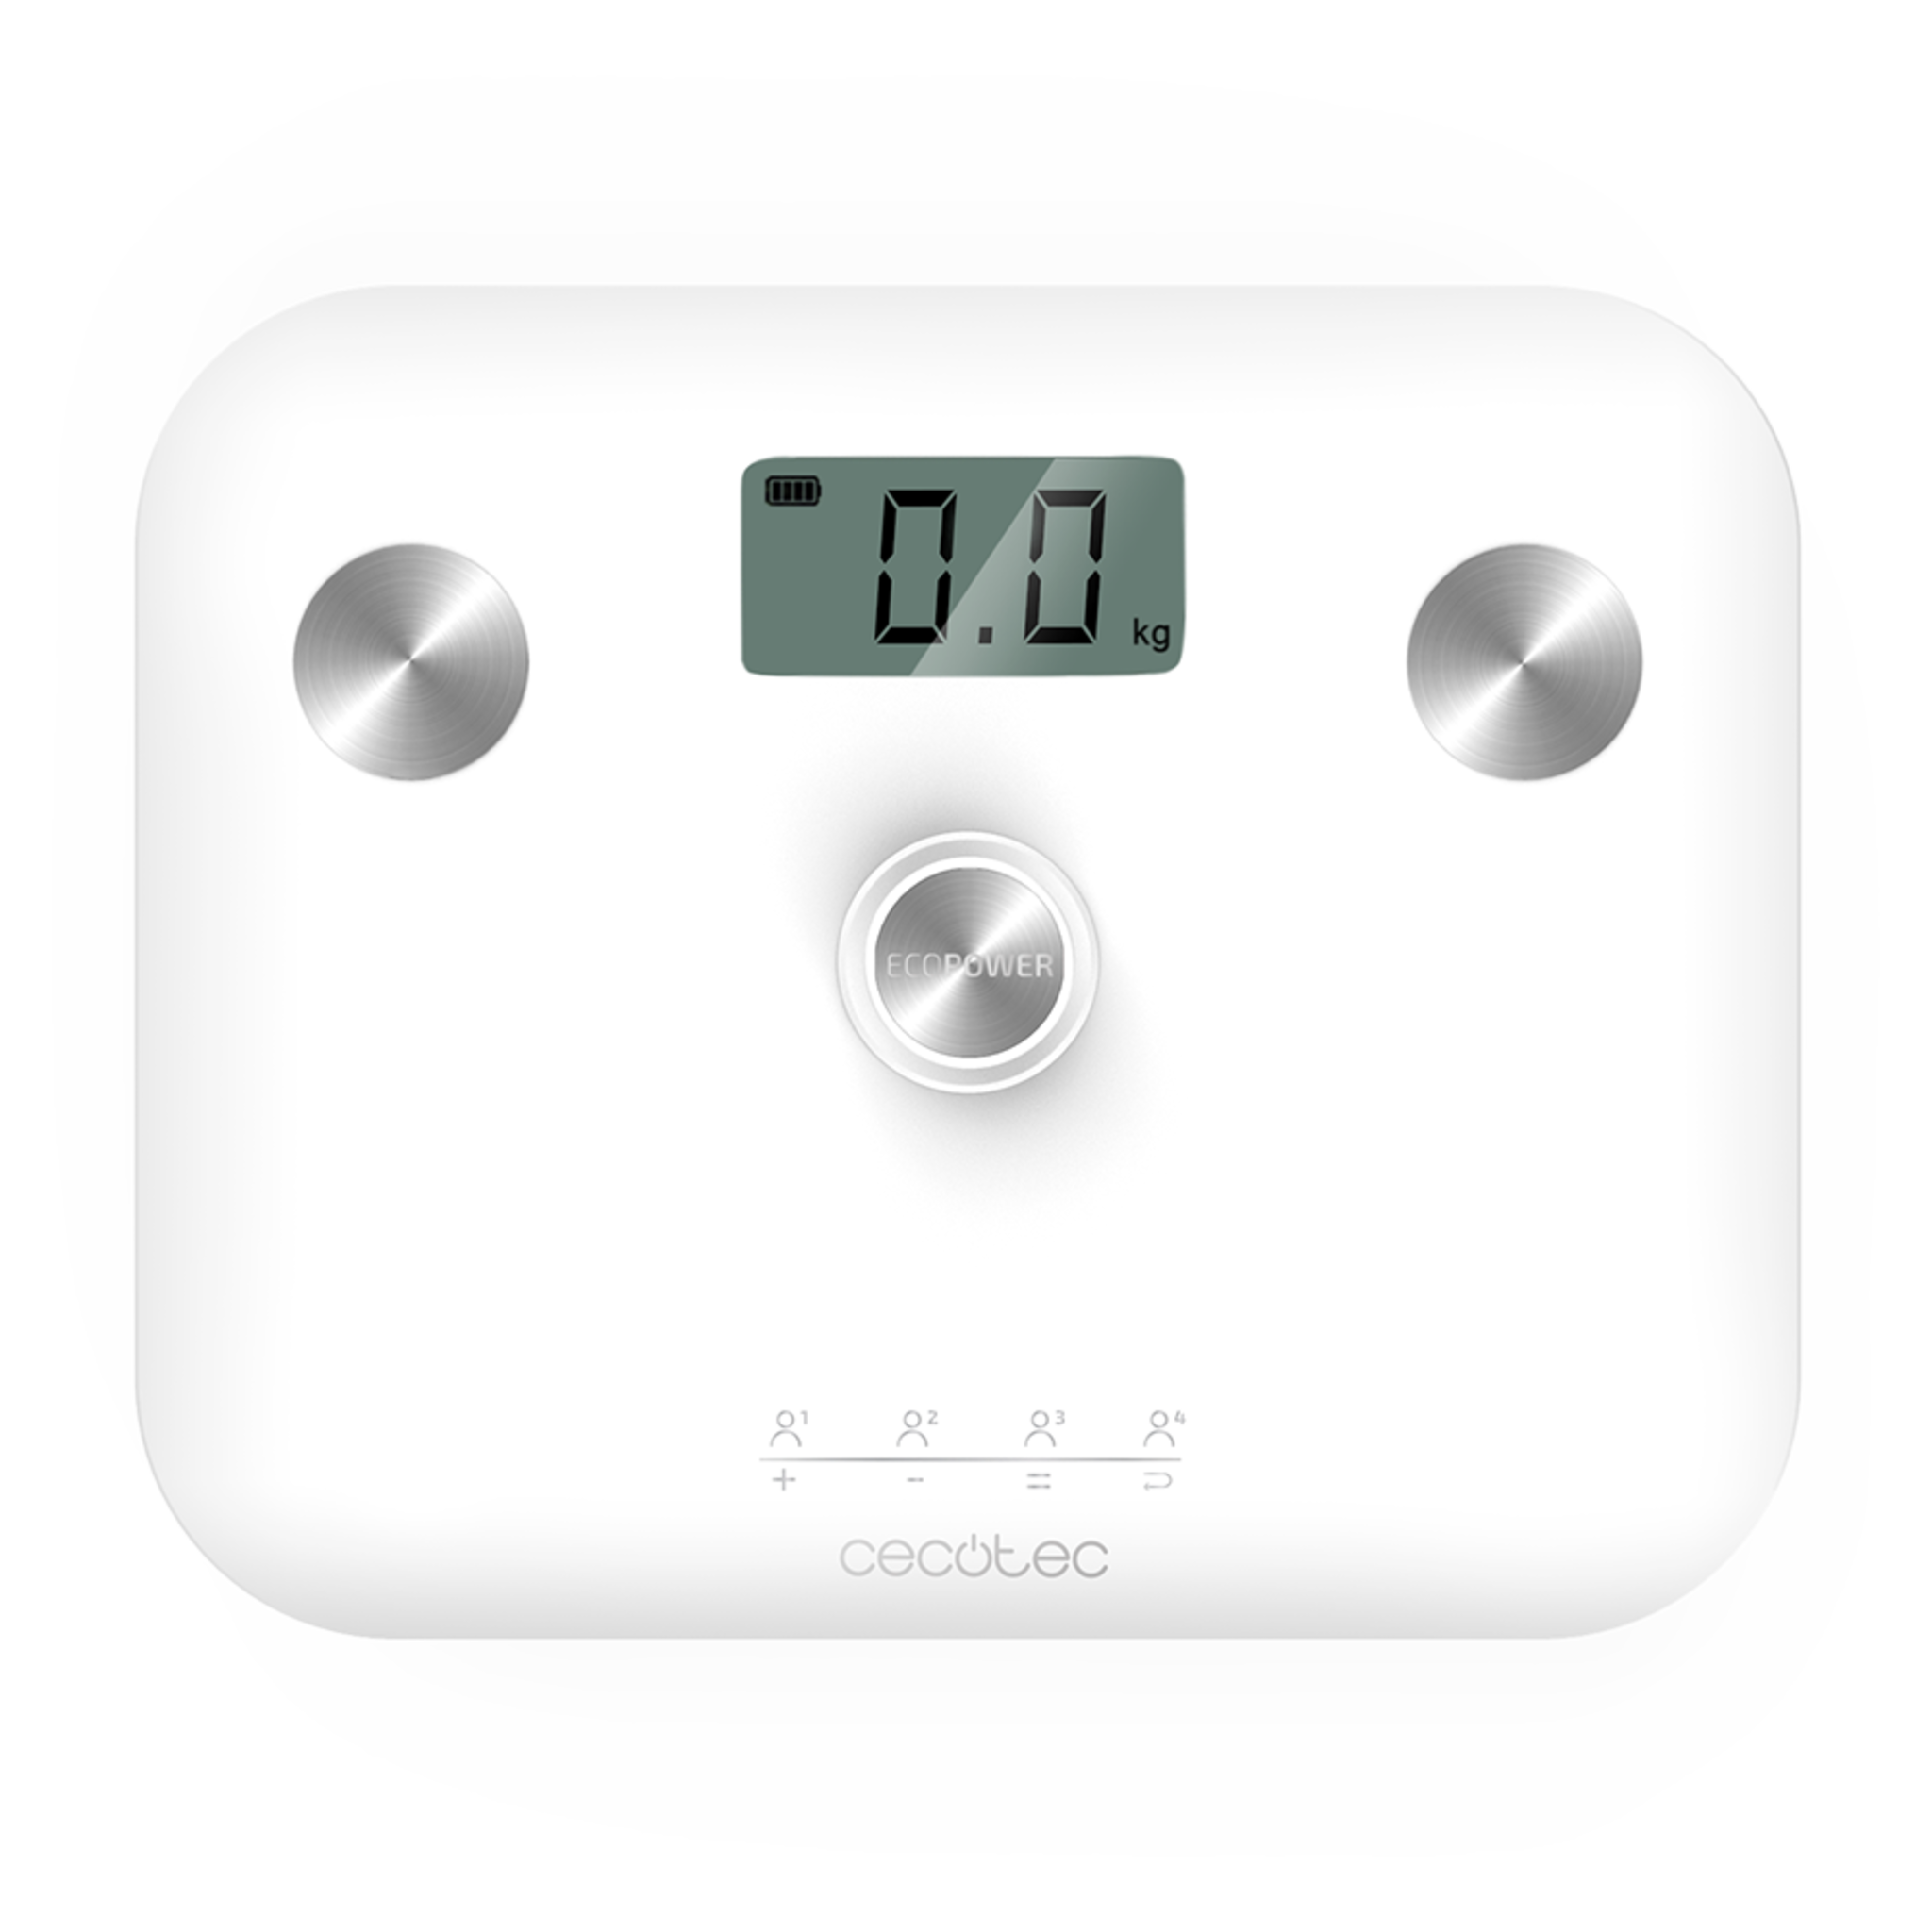 Pèse-personne Surface Precision EcoPower 10100 Full Healthy White. Avec bouton-poussoir, surface en verre trempé très sécurisée, capteurs de précision et écran LCD